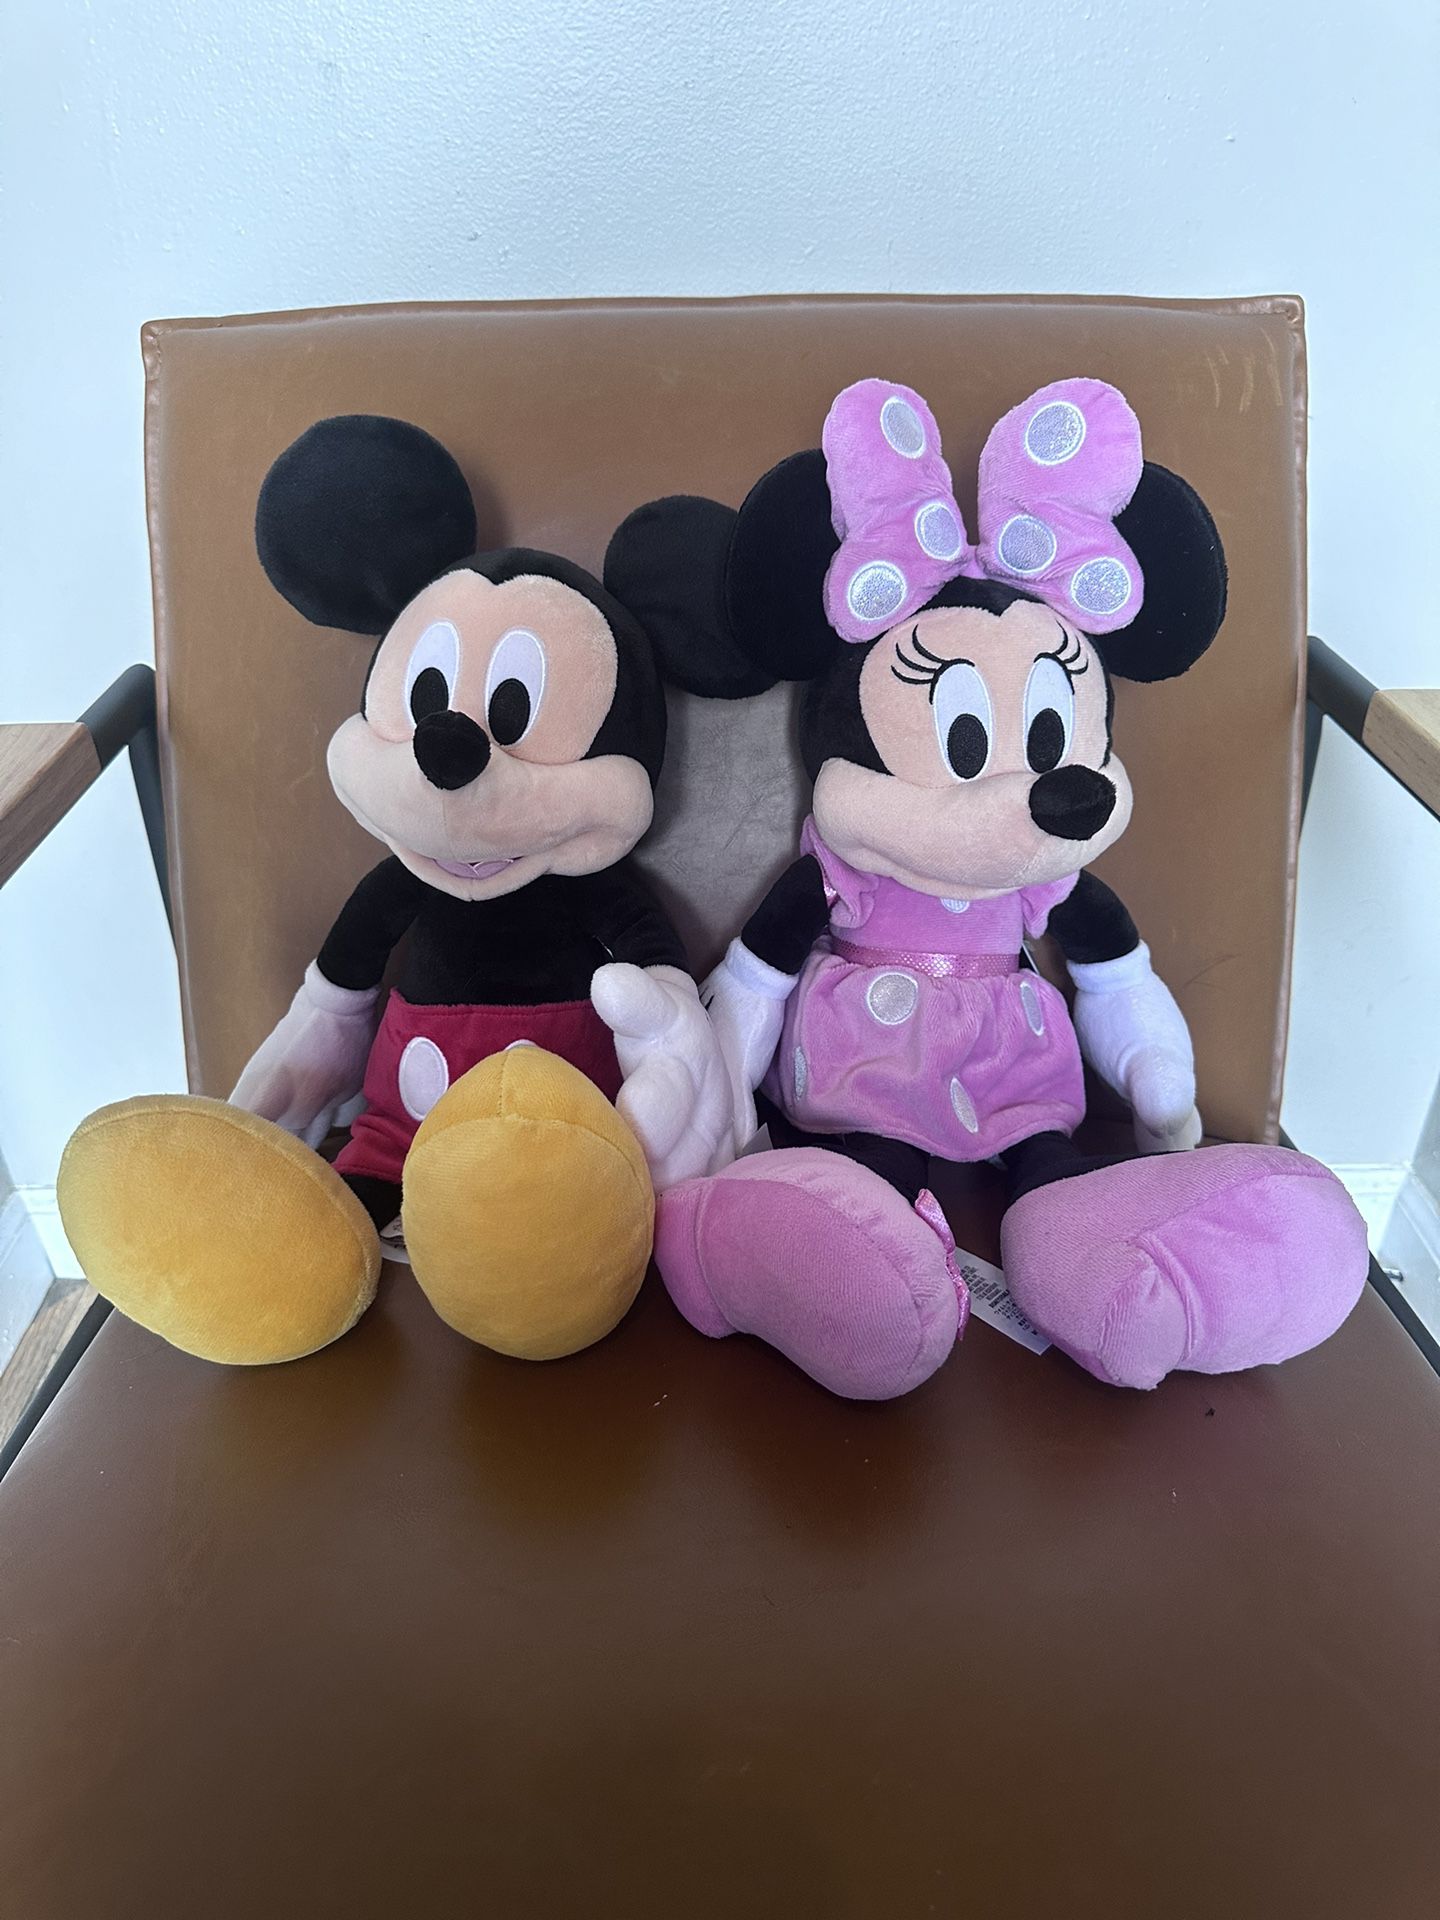 Mickey & Minnie Plush Dolls